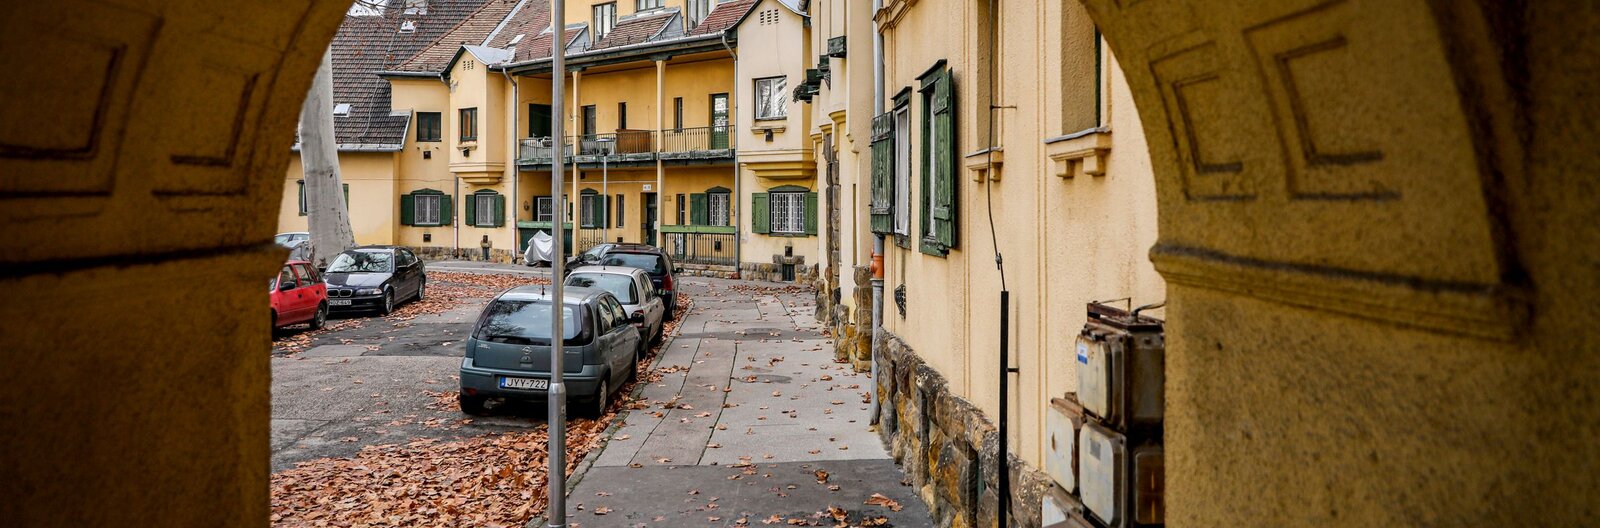 Bájos meseházak, szocreál domborművek és a füstölgő gyárkémények kora – 6 nem mindennapi budapesti lakótelep